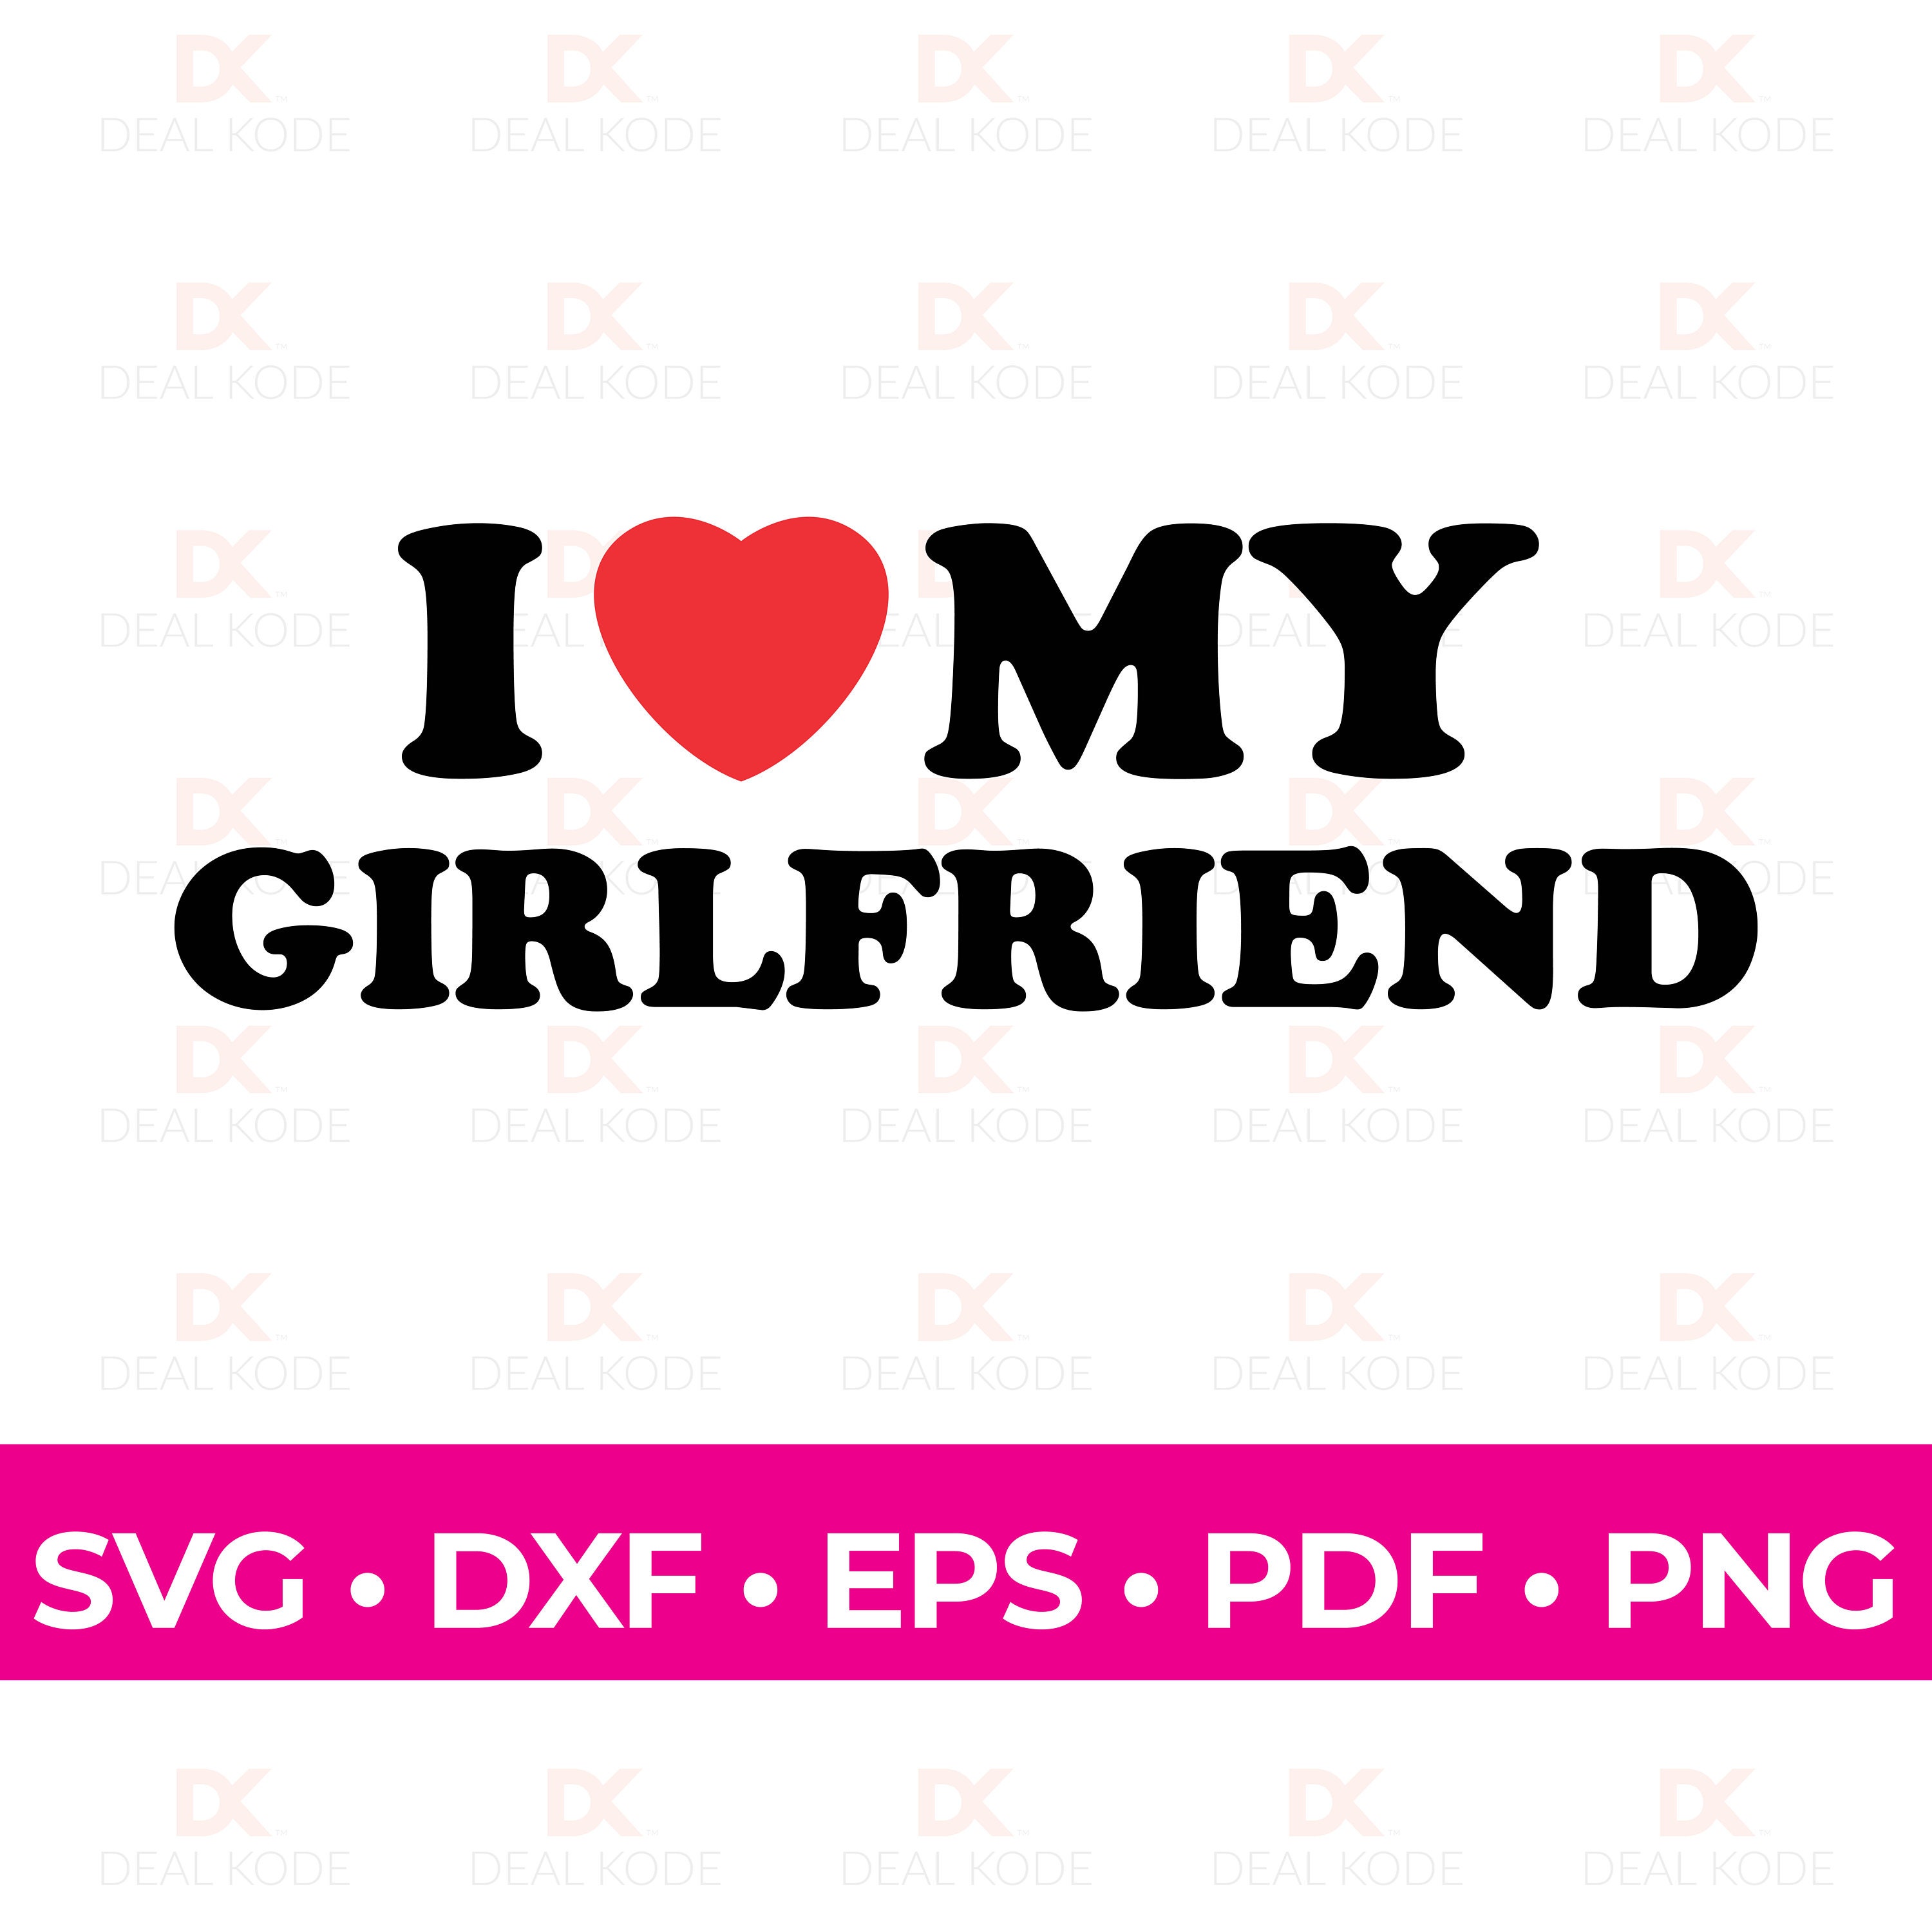 I Love My Boyfriend Pink Heart Svg Graphic by ElementDesignAndArt